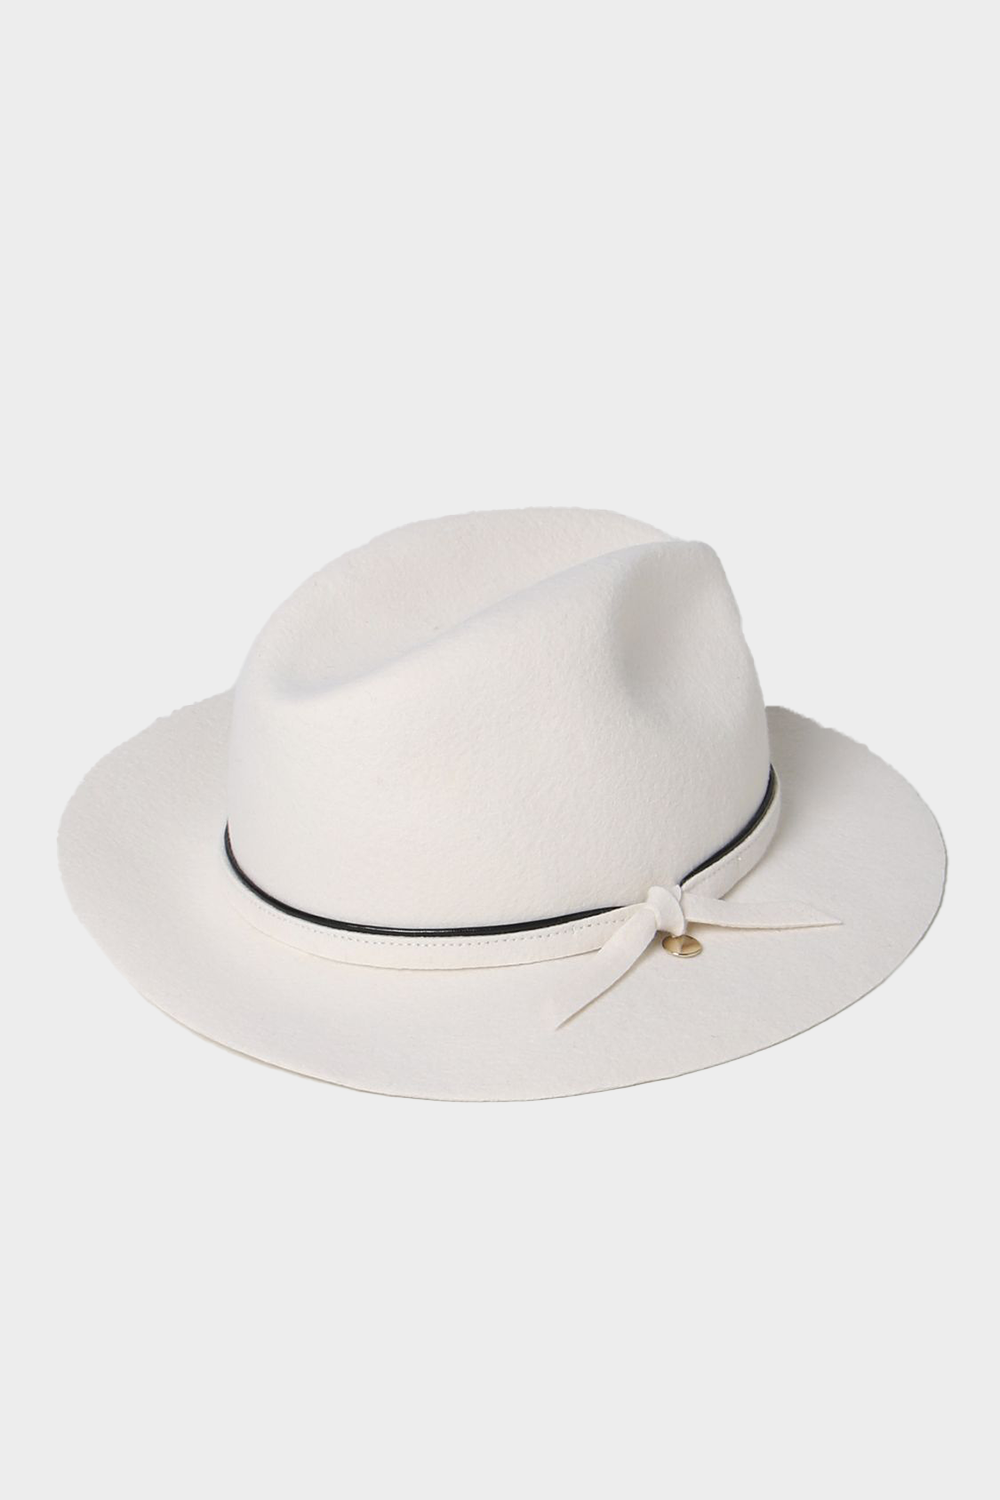 'כובע פדורה לנשים בצבע בז